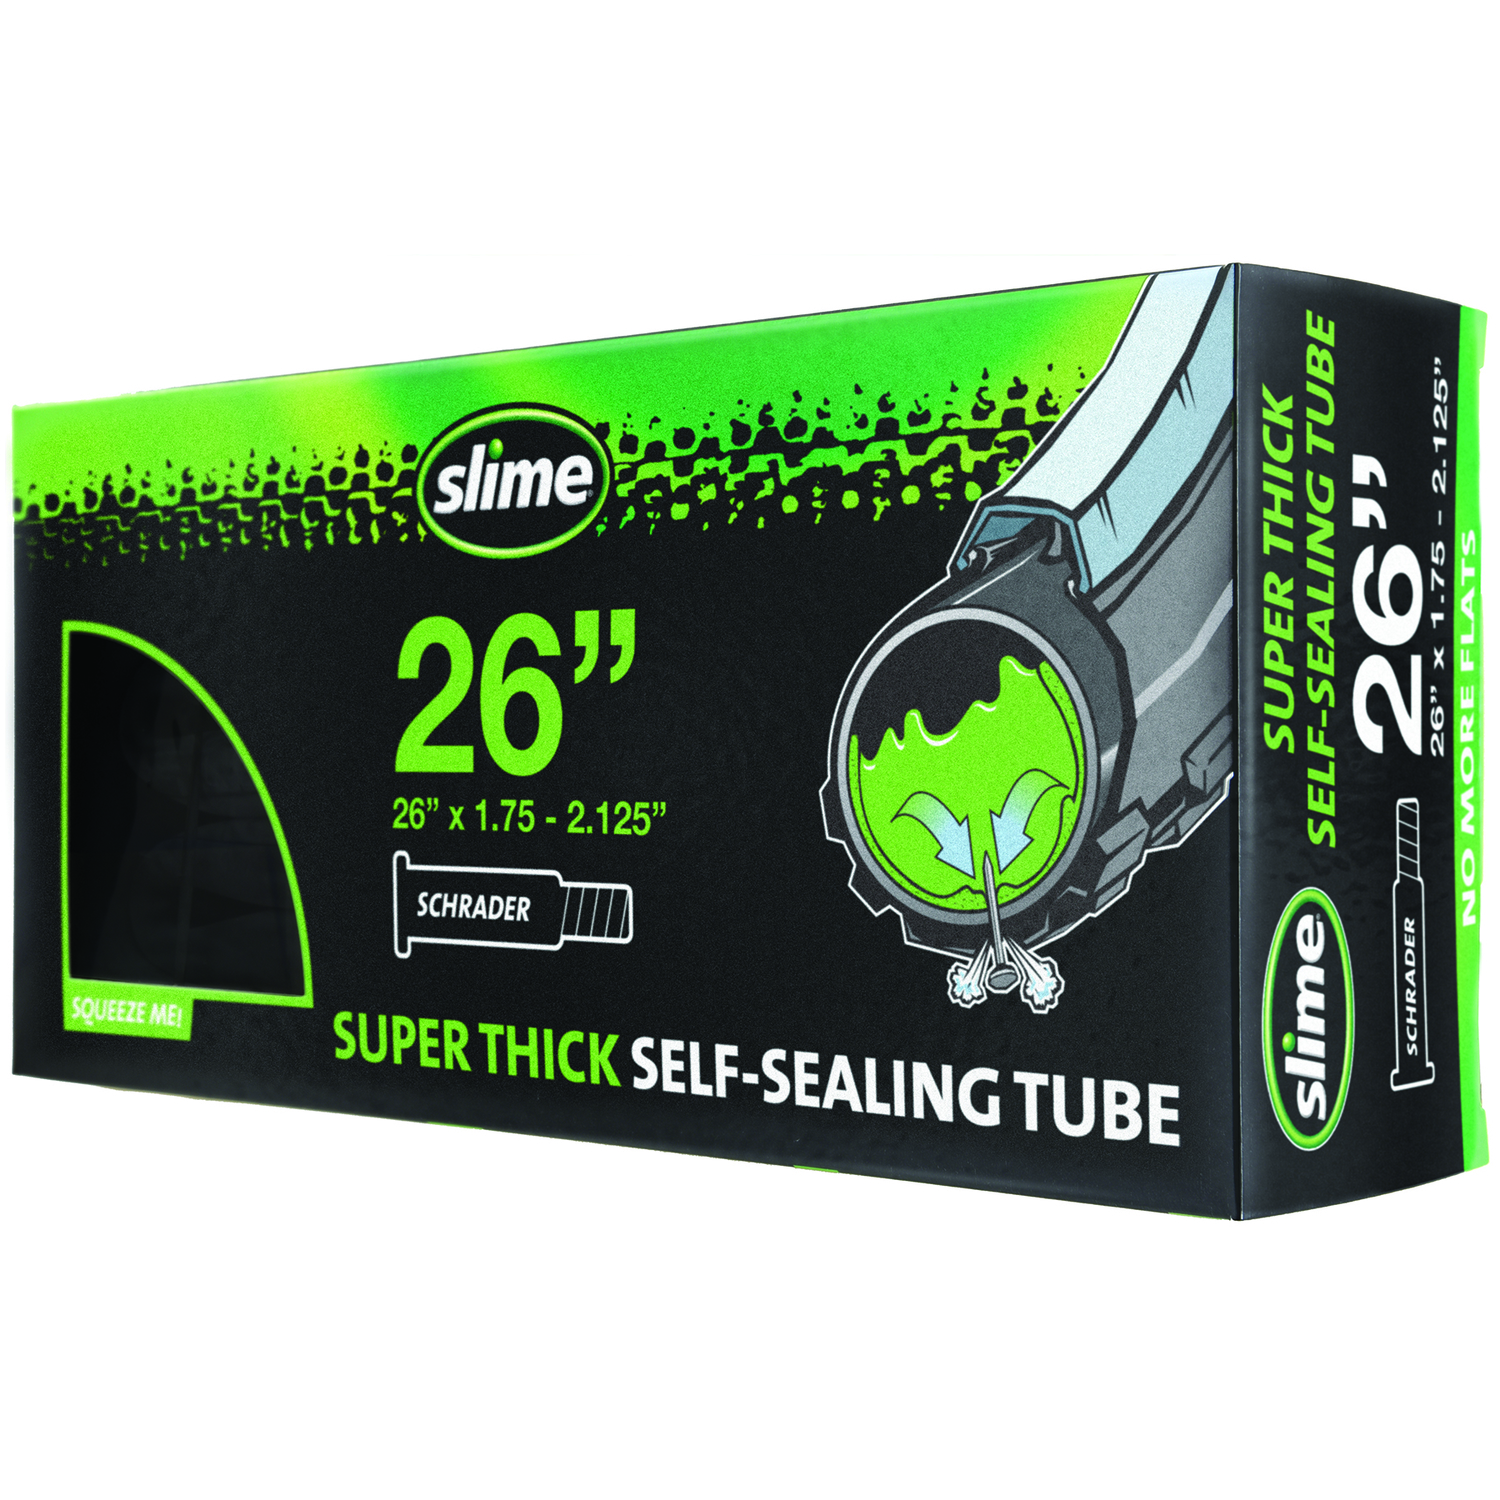 slime smart tube 26